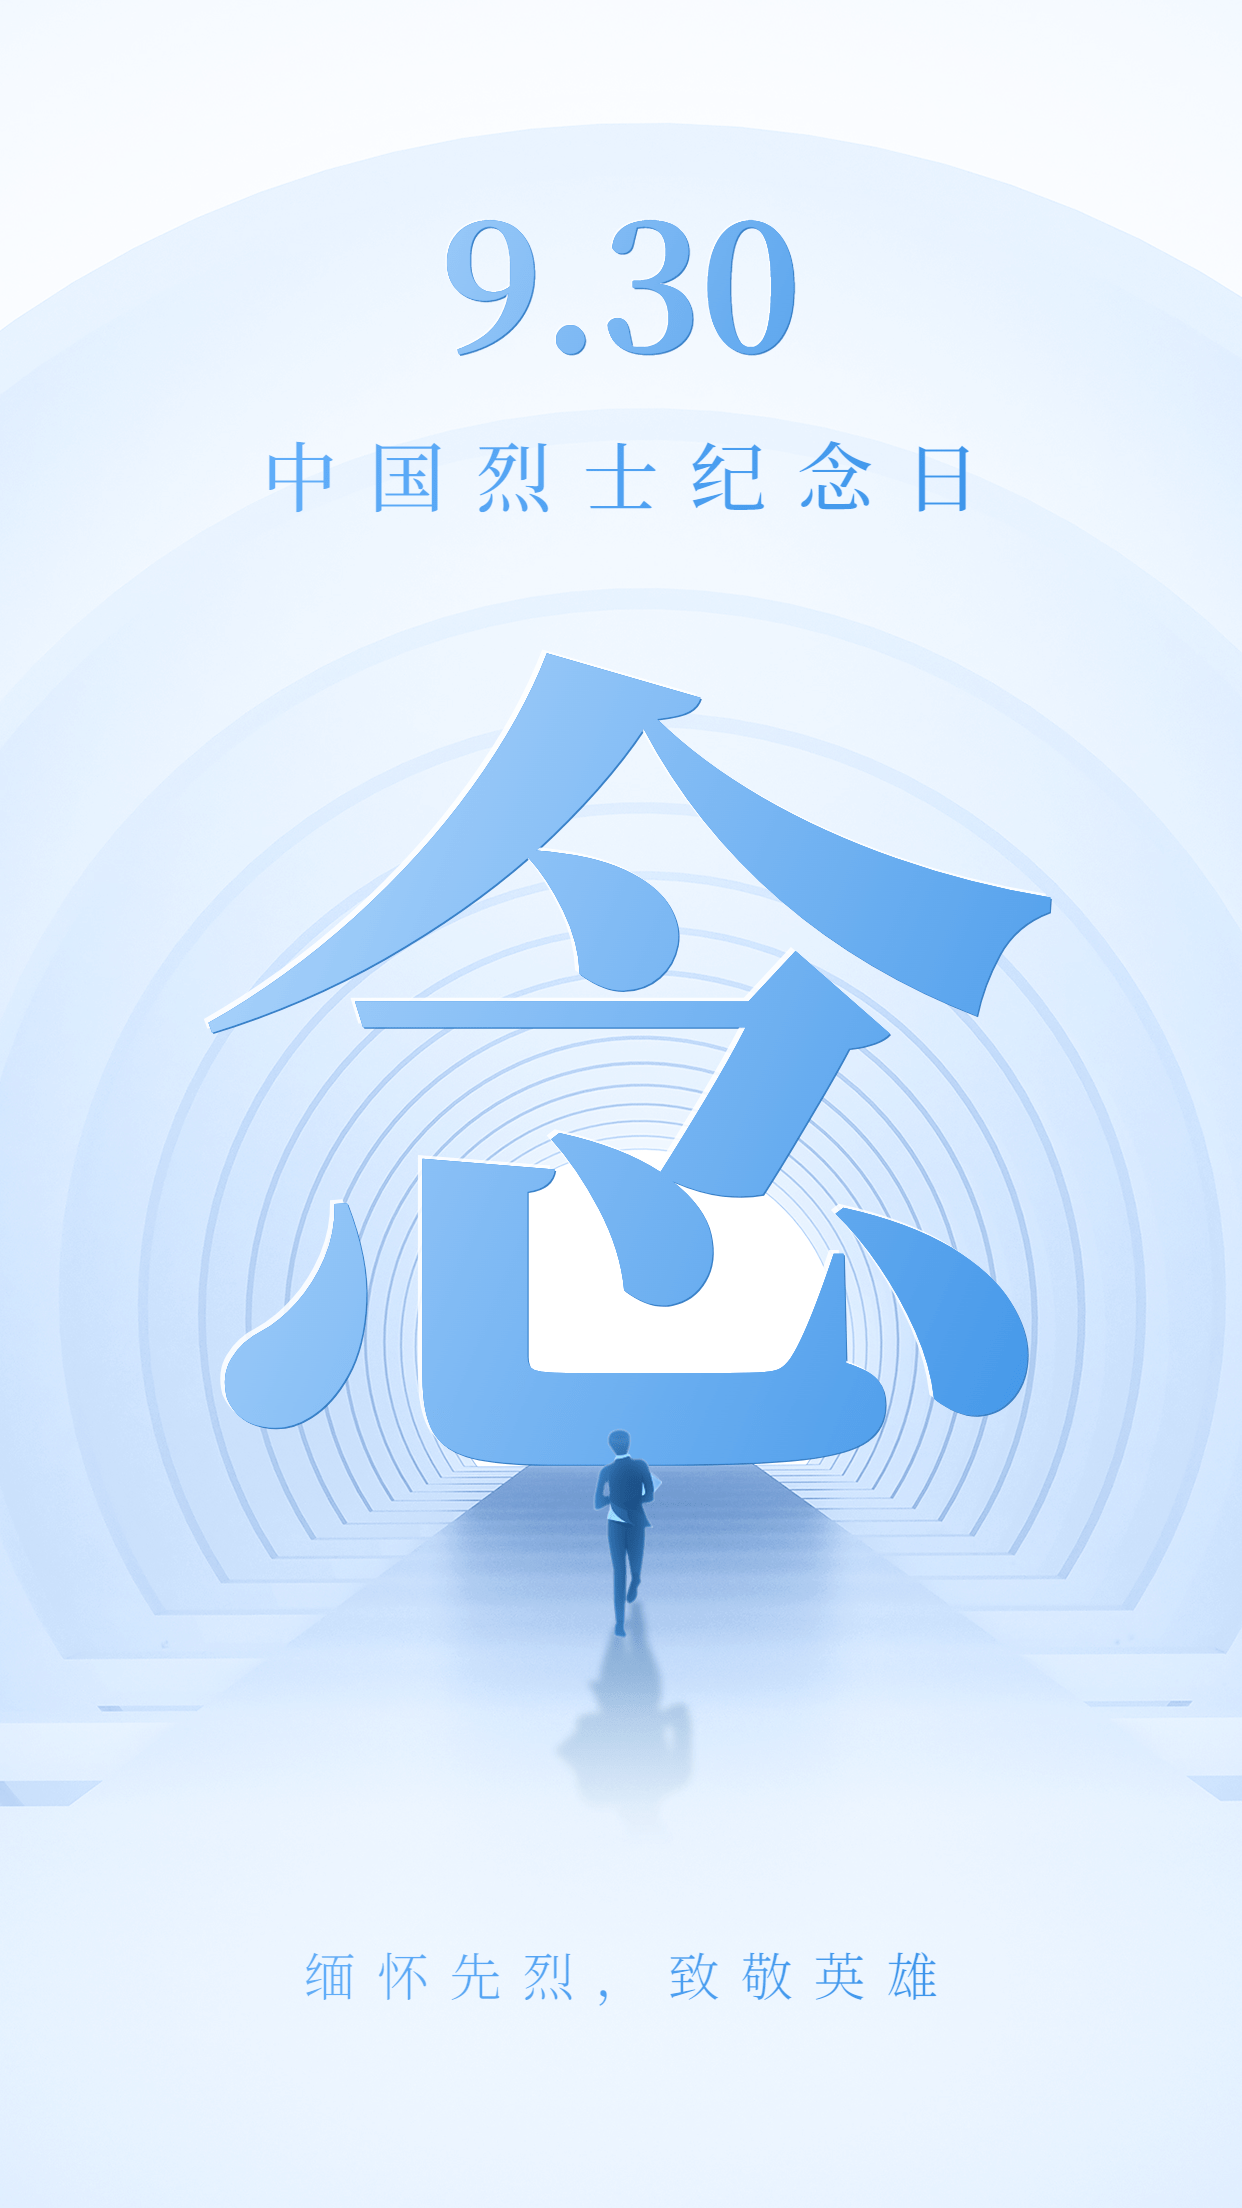 中国烈士纪念日节日宣传合成手机海报预览效果